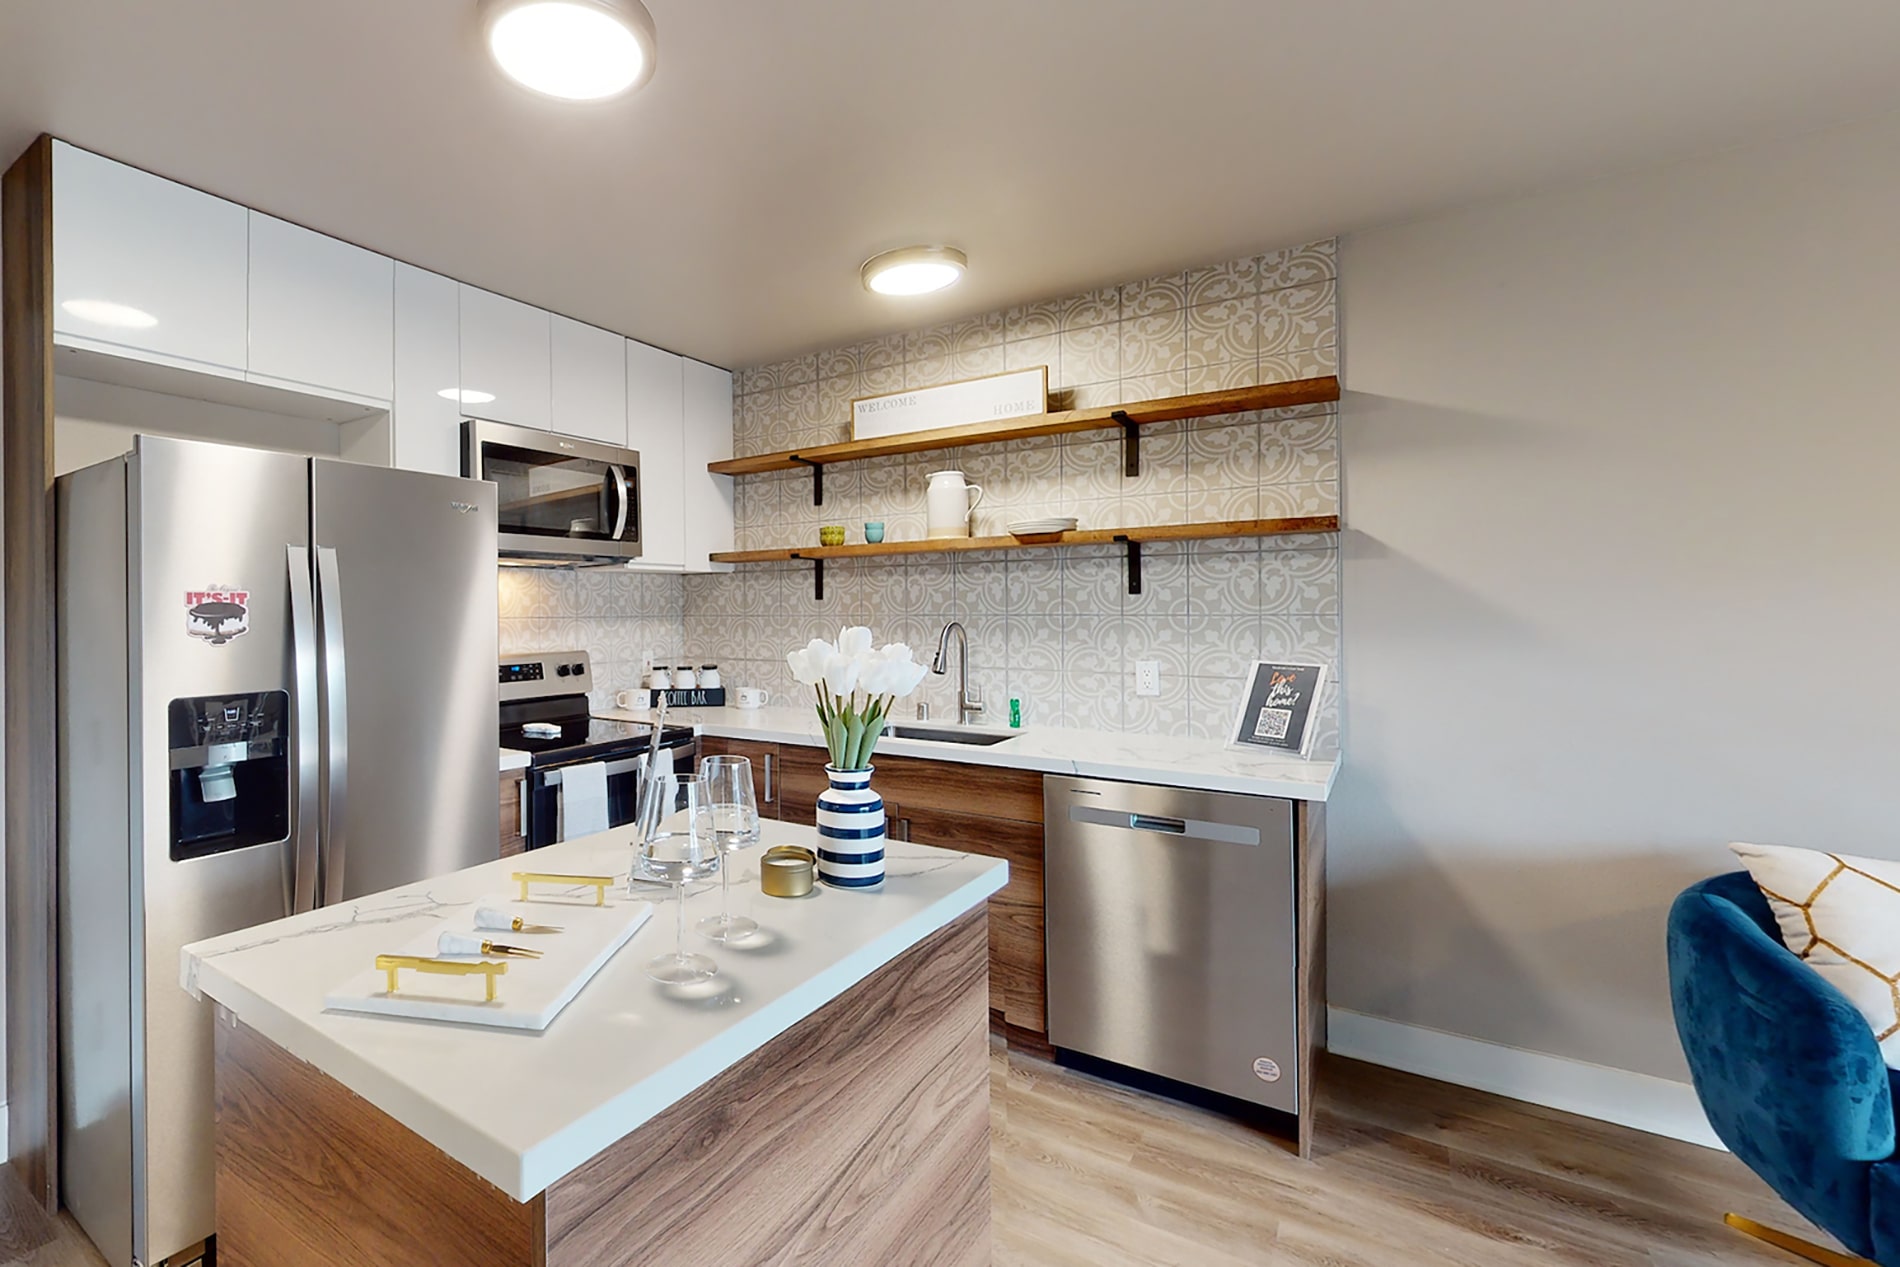 CitySouth apartment kitchen